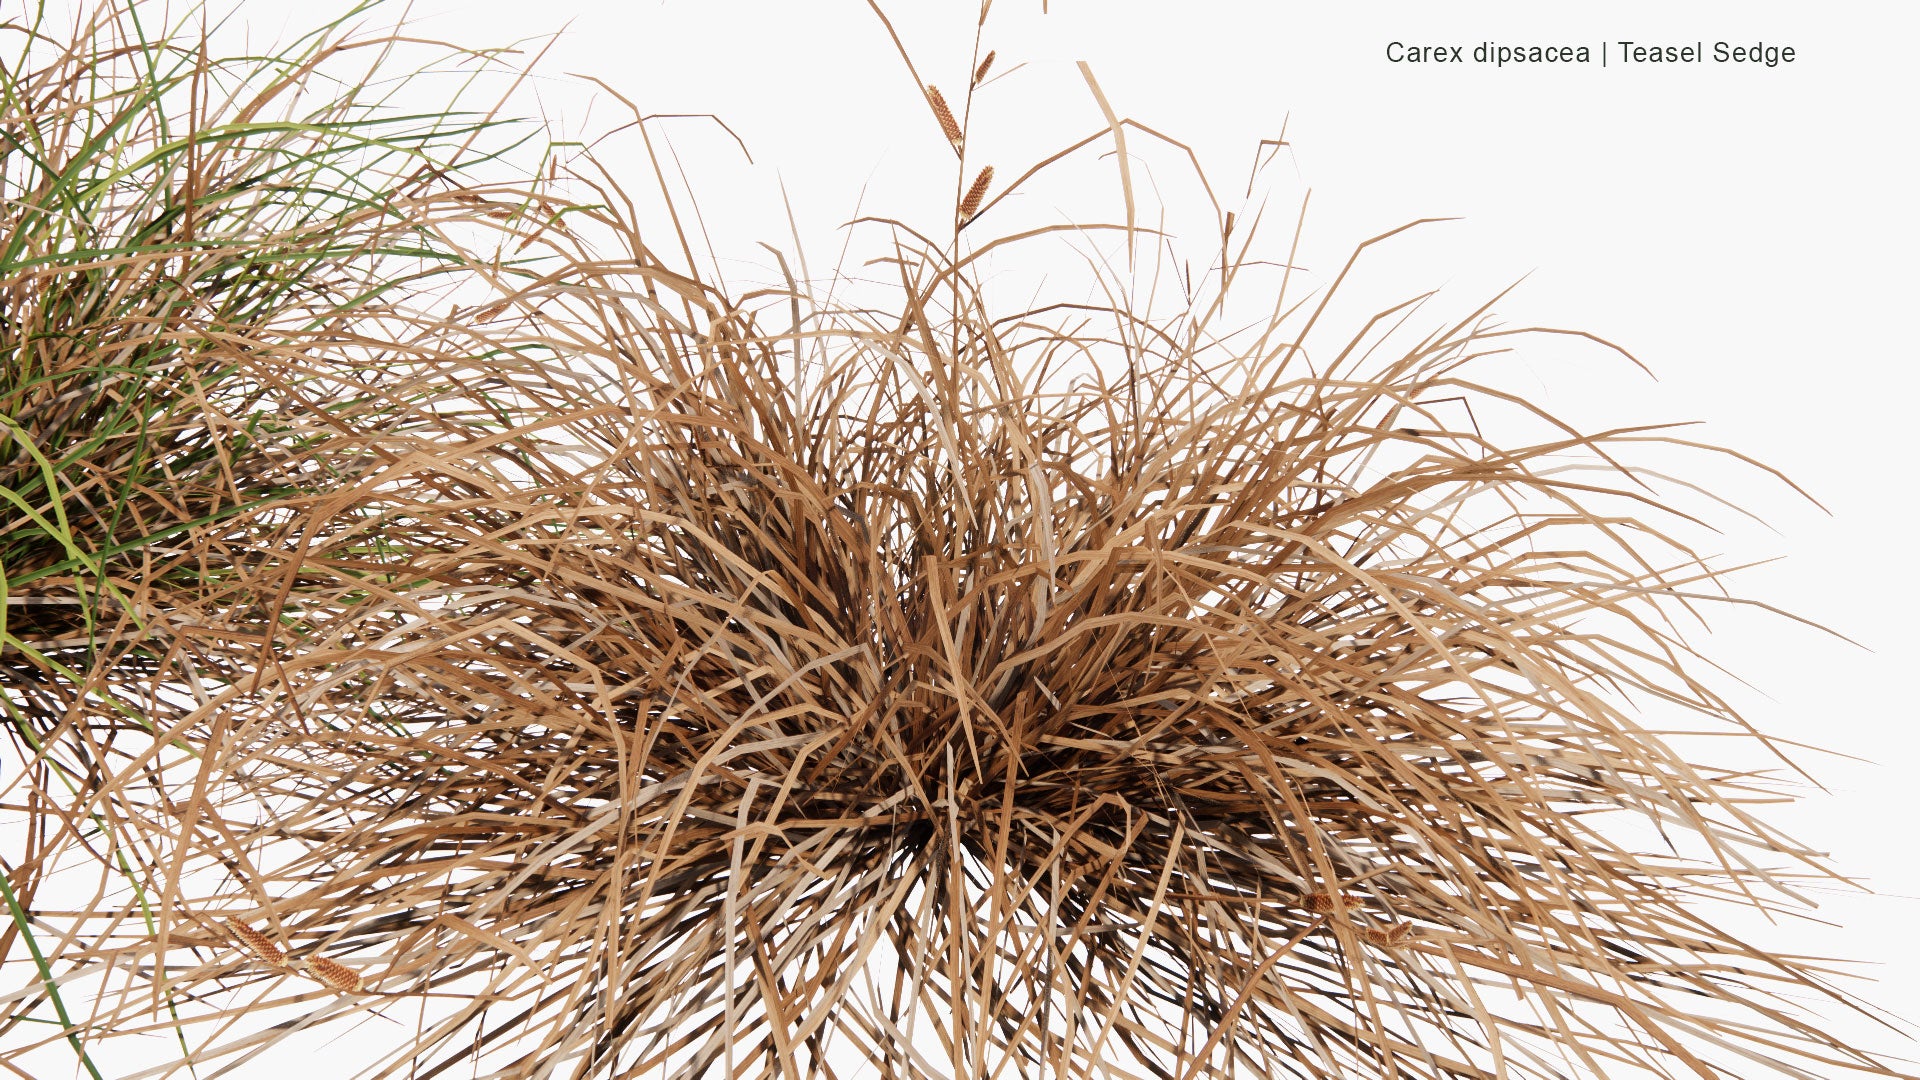 Low Poly Carex Dipsacea - Teasel Sedge (3D Model)